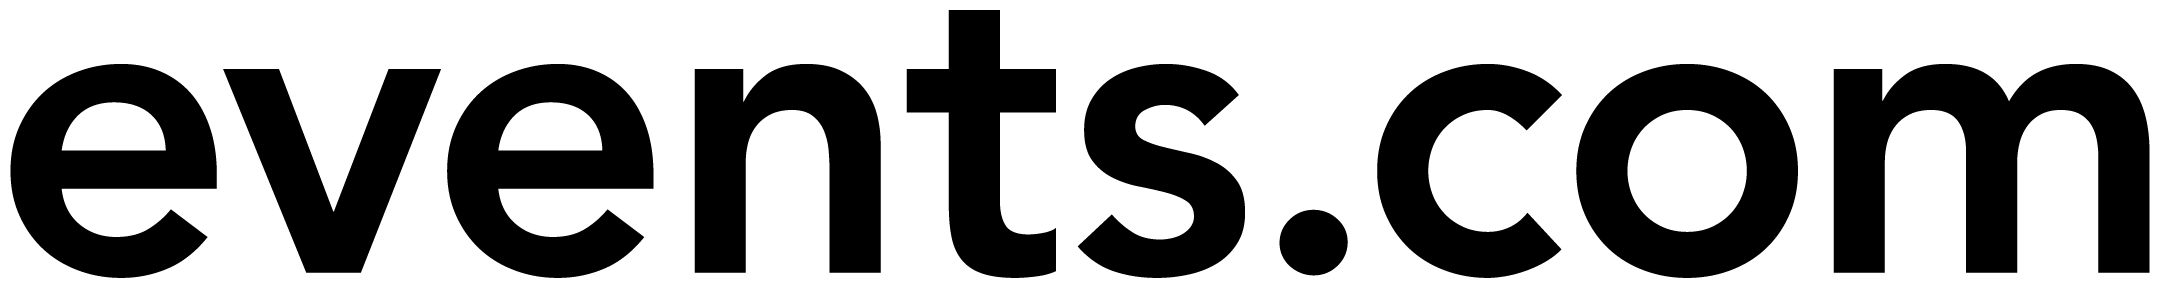 events.com black logo for brand guide